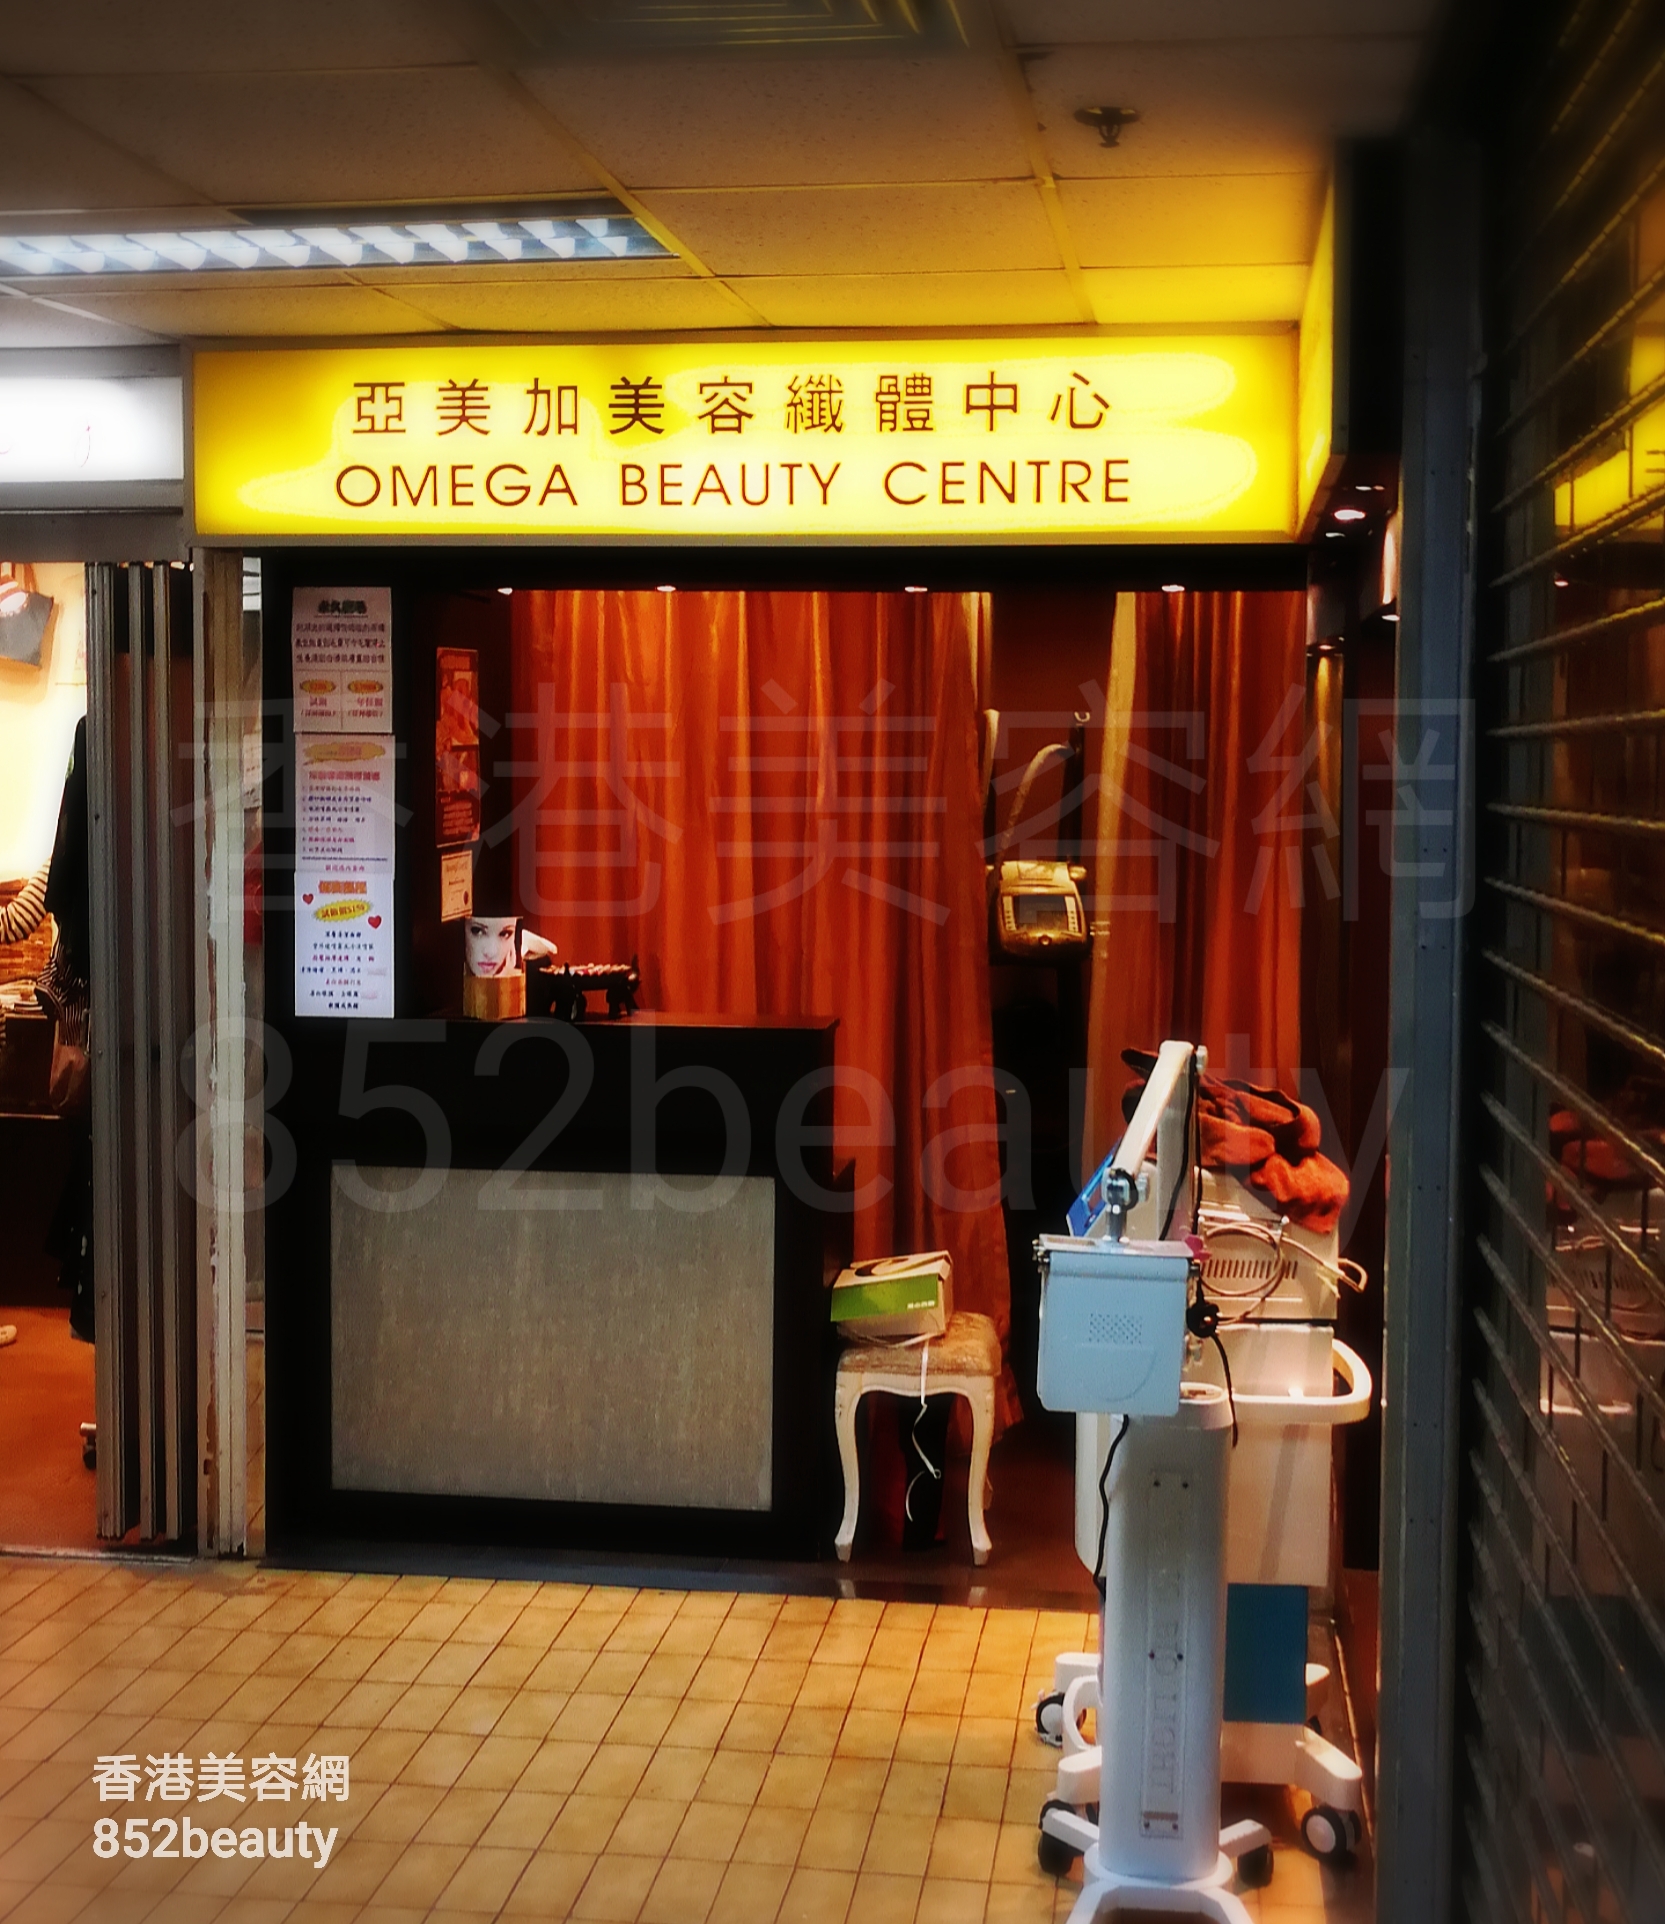 香港美容網 Hong Kong Beauty Salon 美容院 / 美容師: 亞美加美容纖體中心